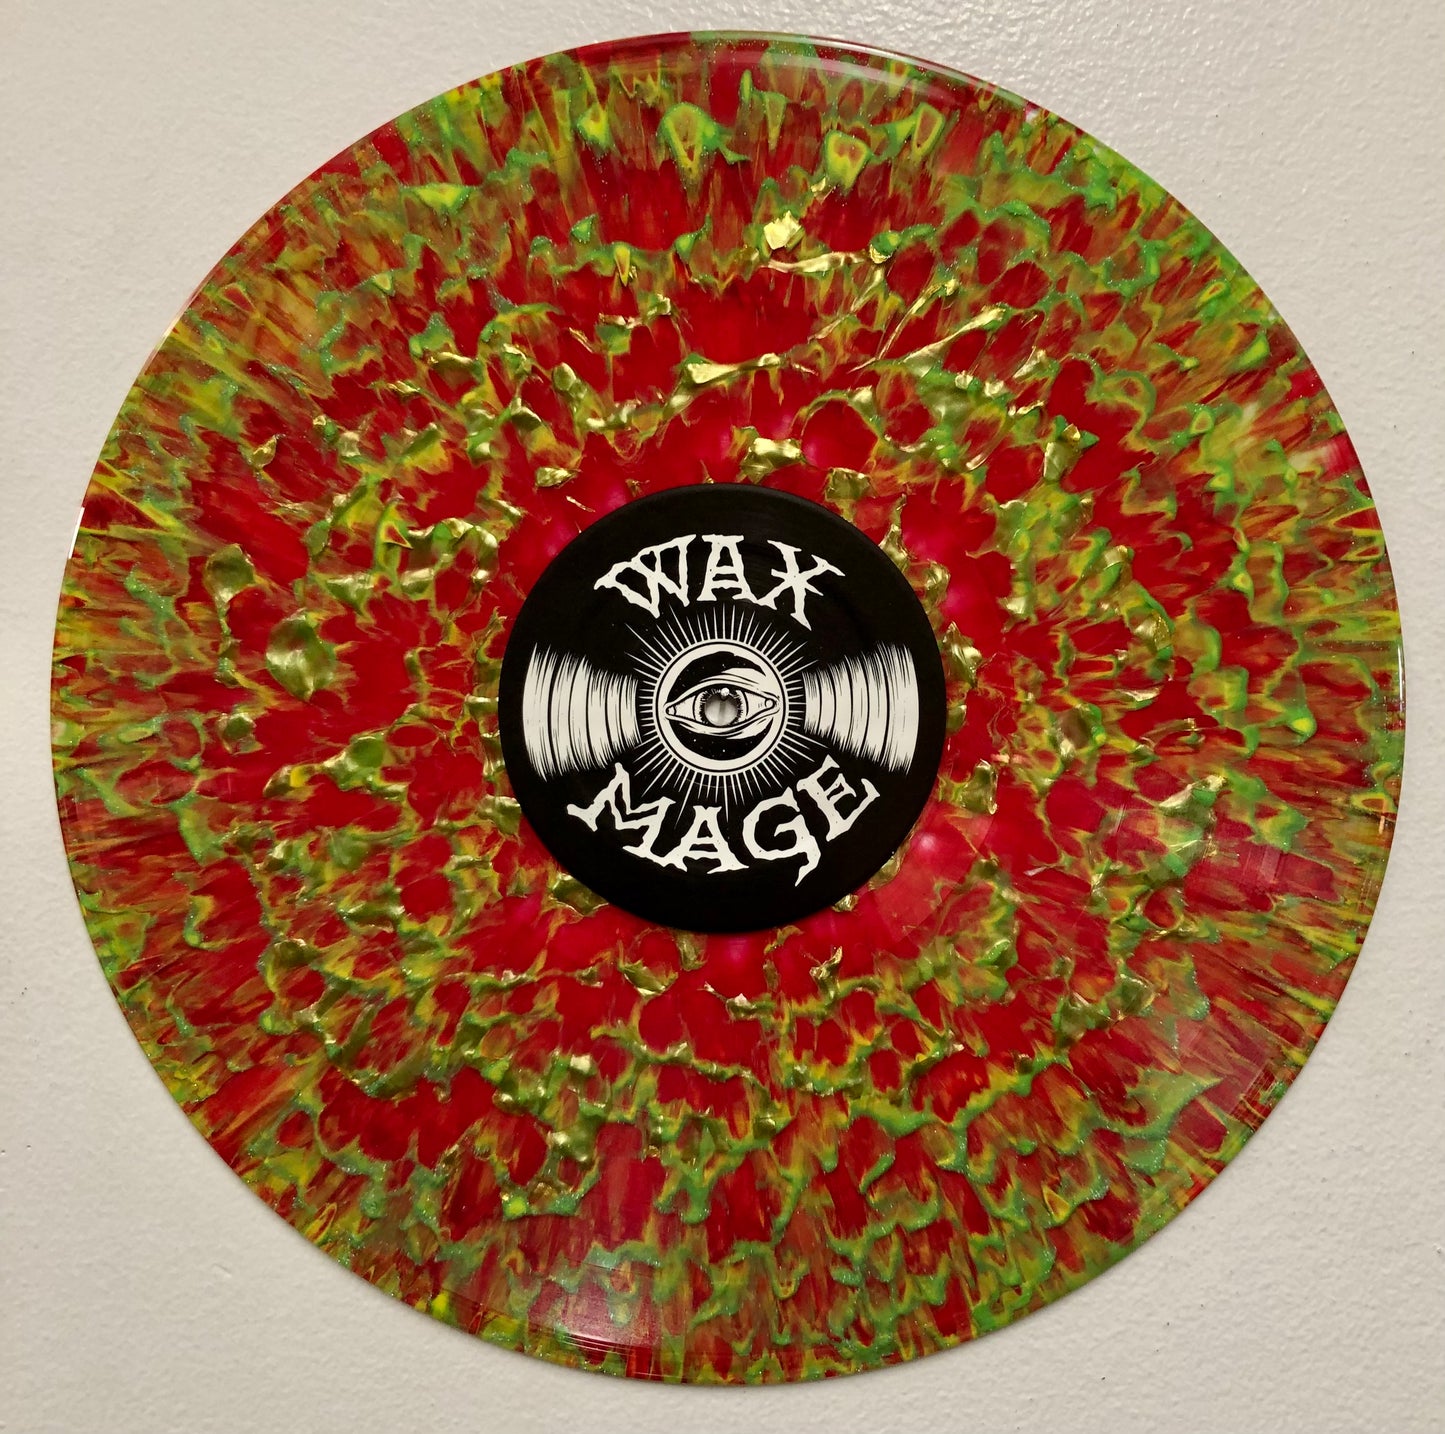 OMR-089 Kolga “Black Tides” WAX MAGE Vinyl (Release Date 3/29/24!)